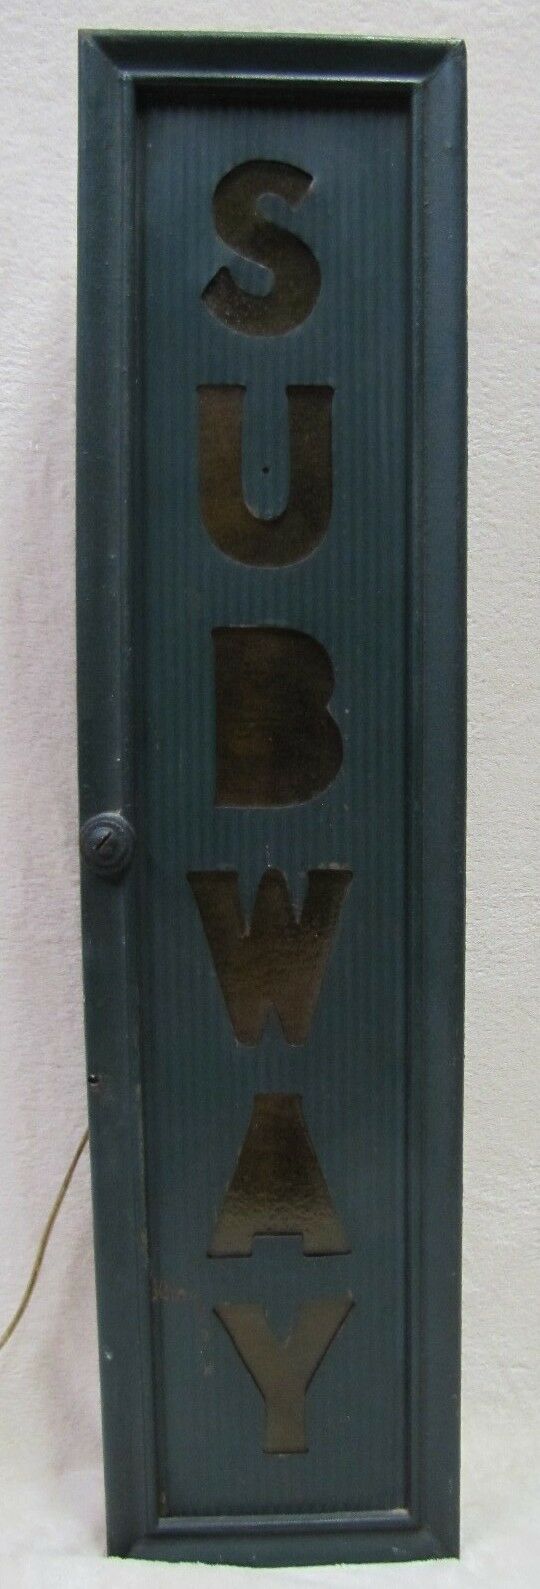 Old Original SUBWAY Sign back lite metal front w custom lighted wooden box frame